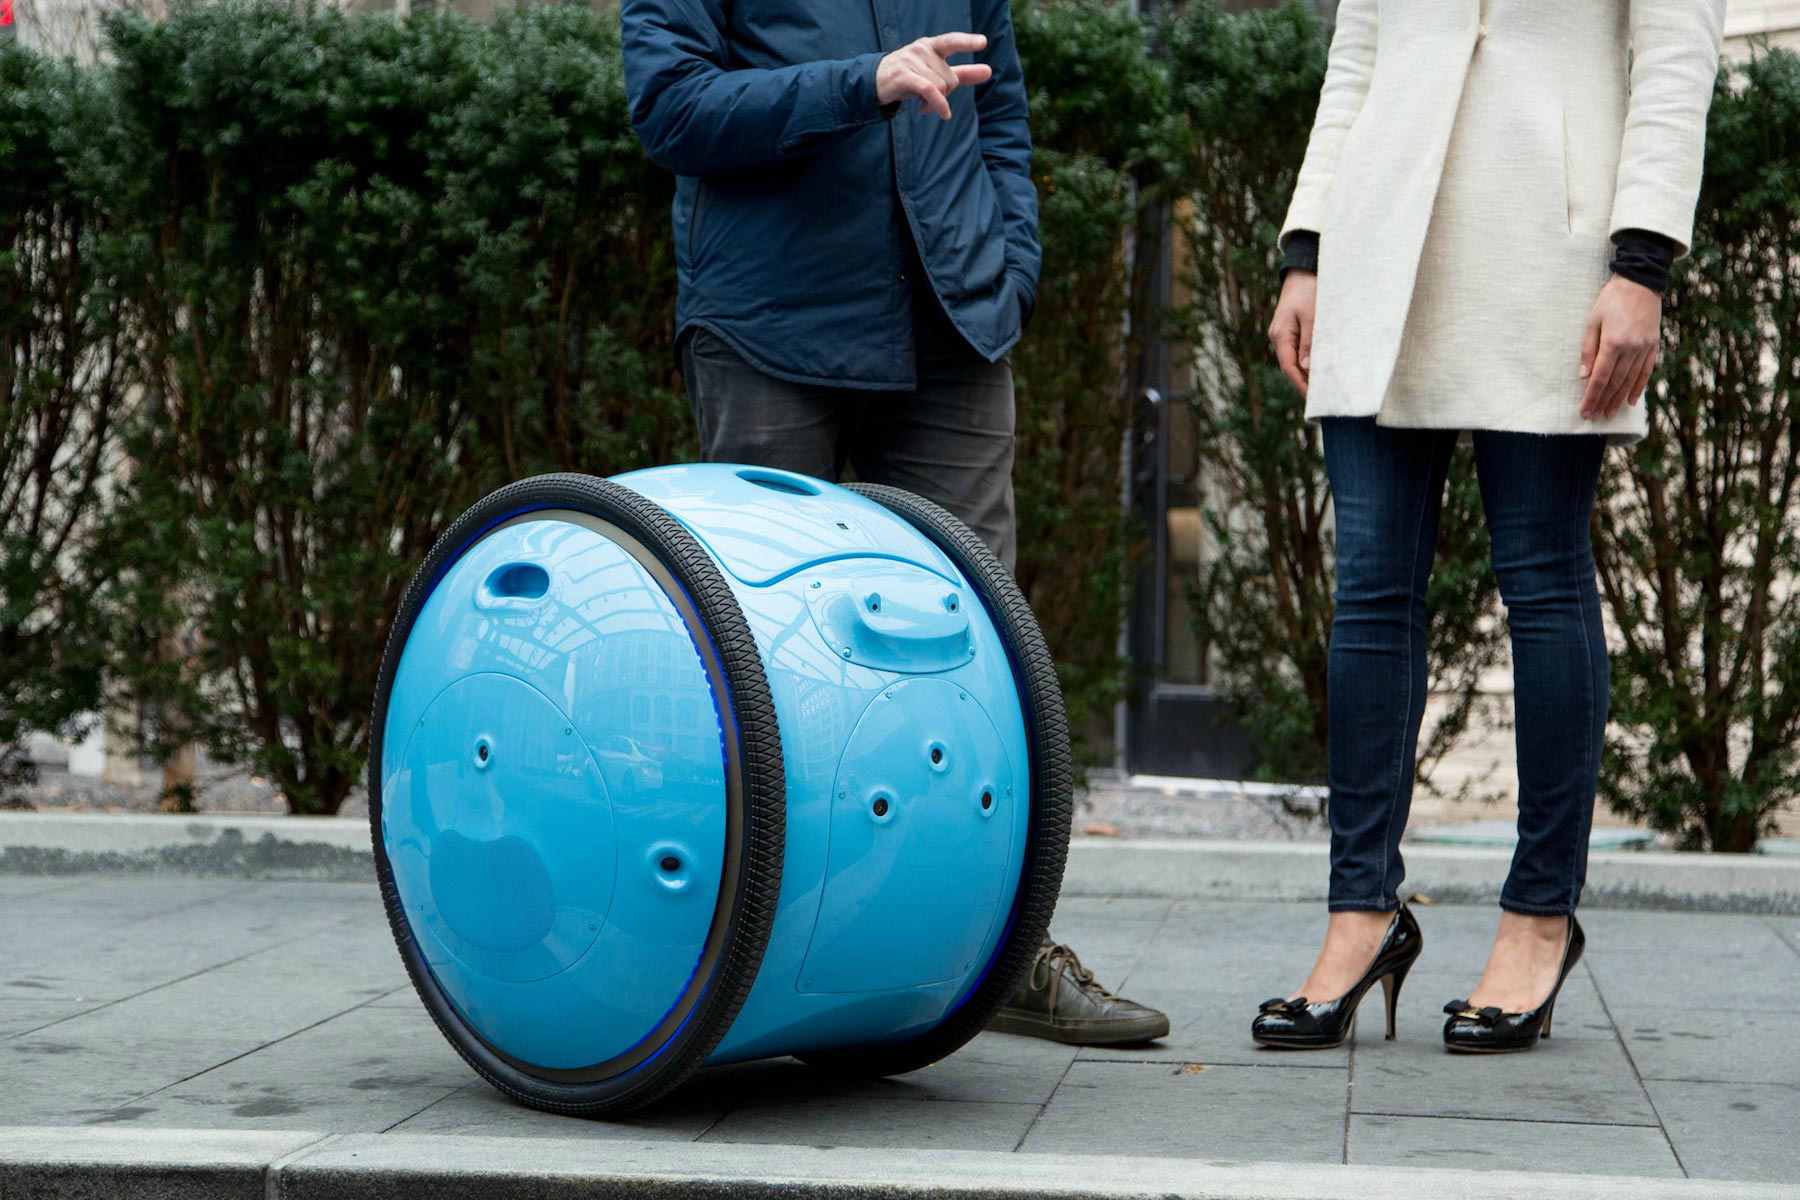 Se trata de un robot inteligente capaz de transportar los objetos ligeros de la persona mientras estas se desplazan